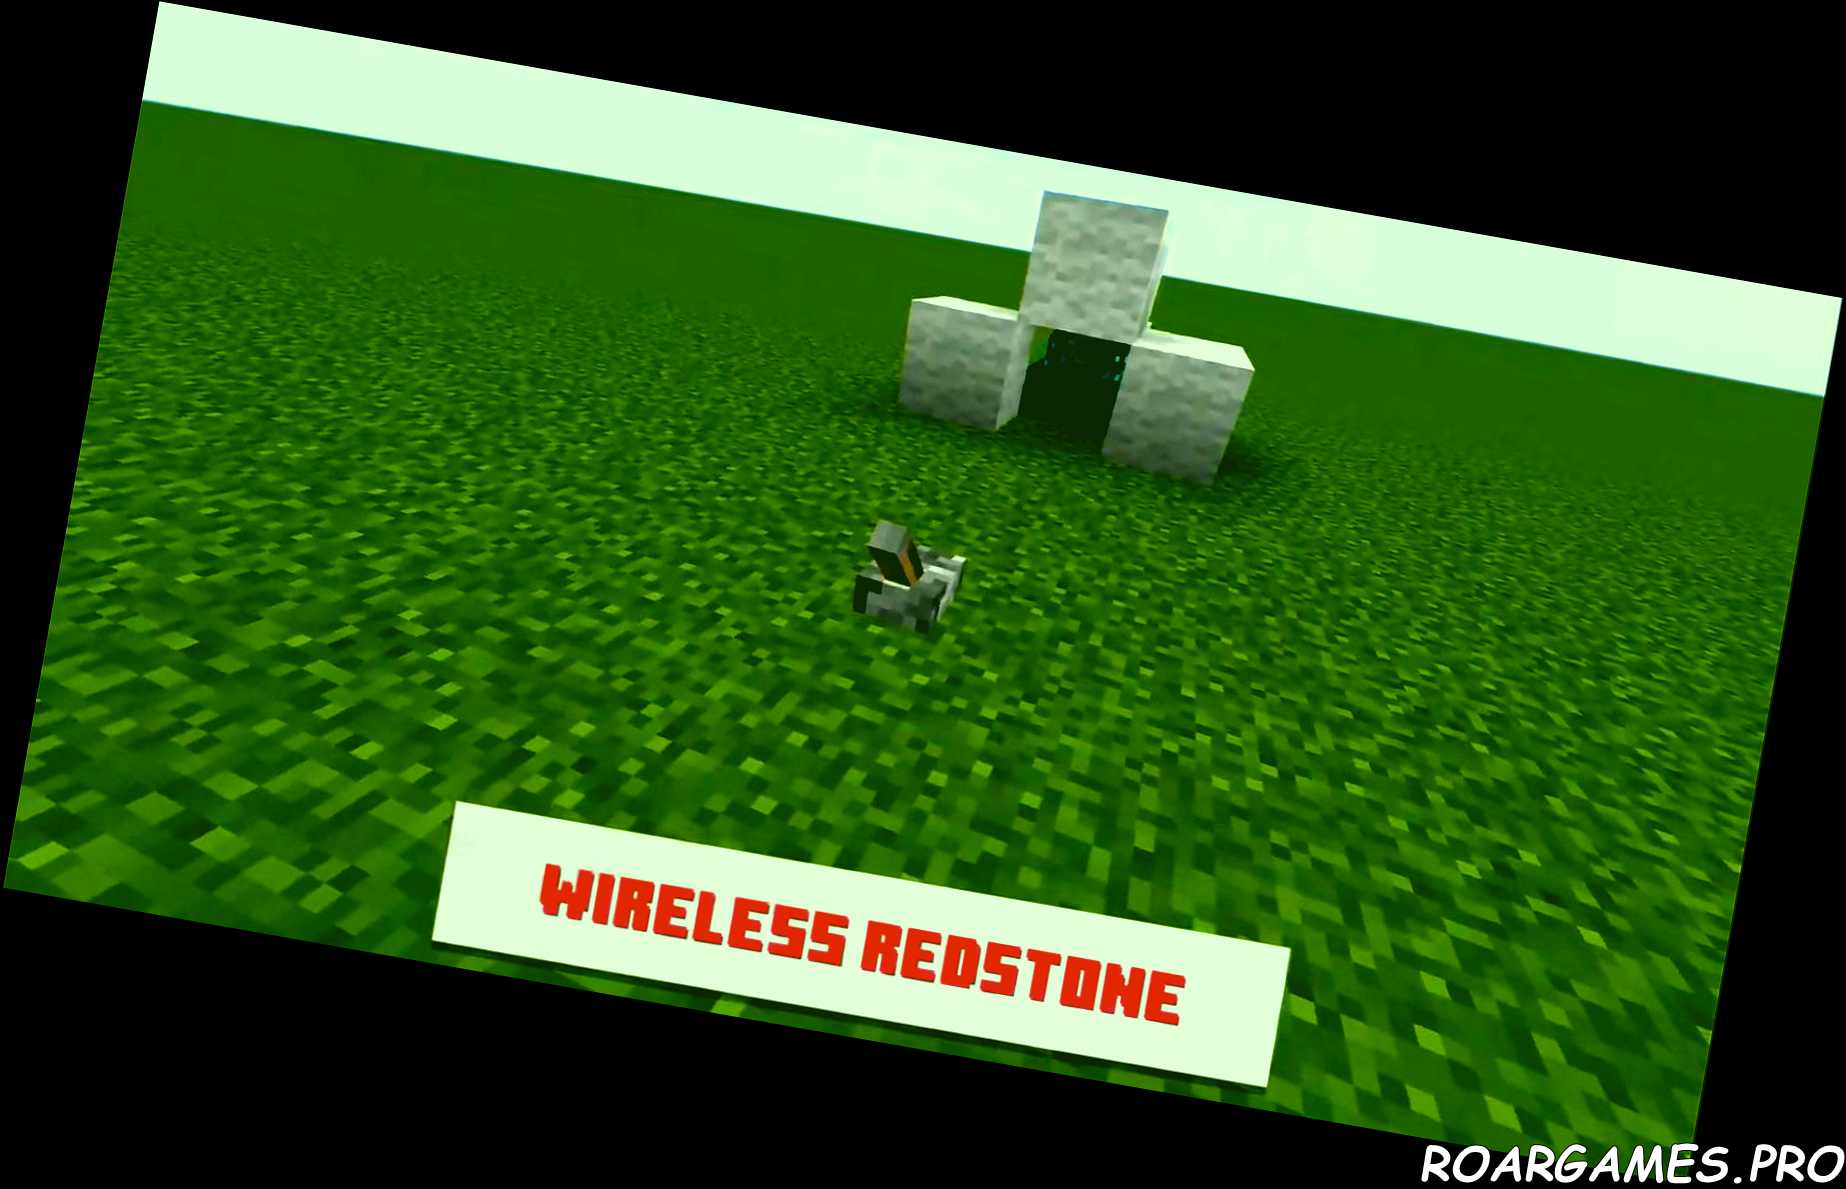 Minecraft Wireless Redstone